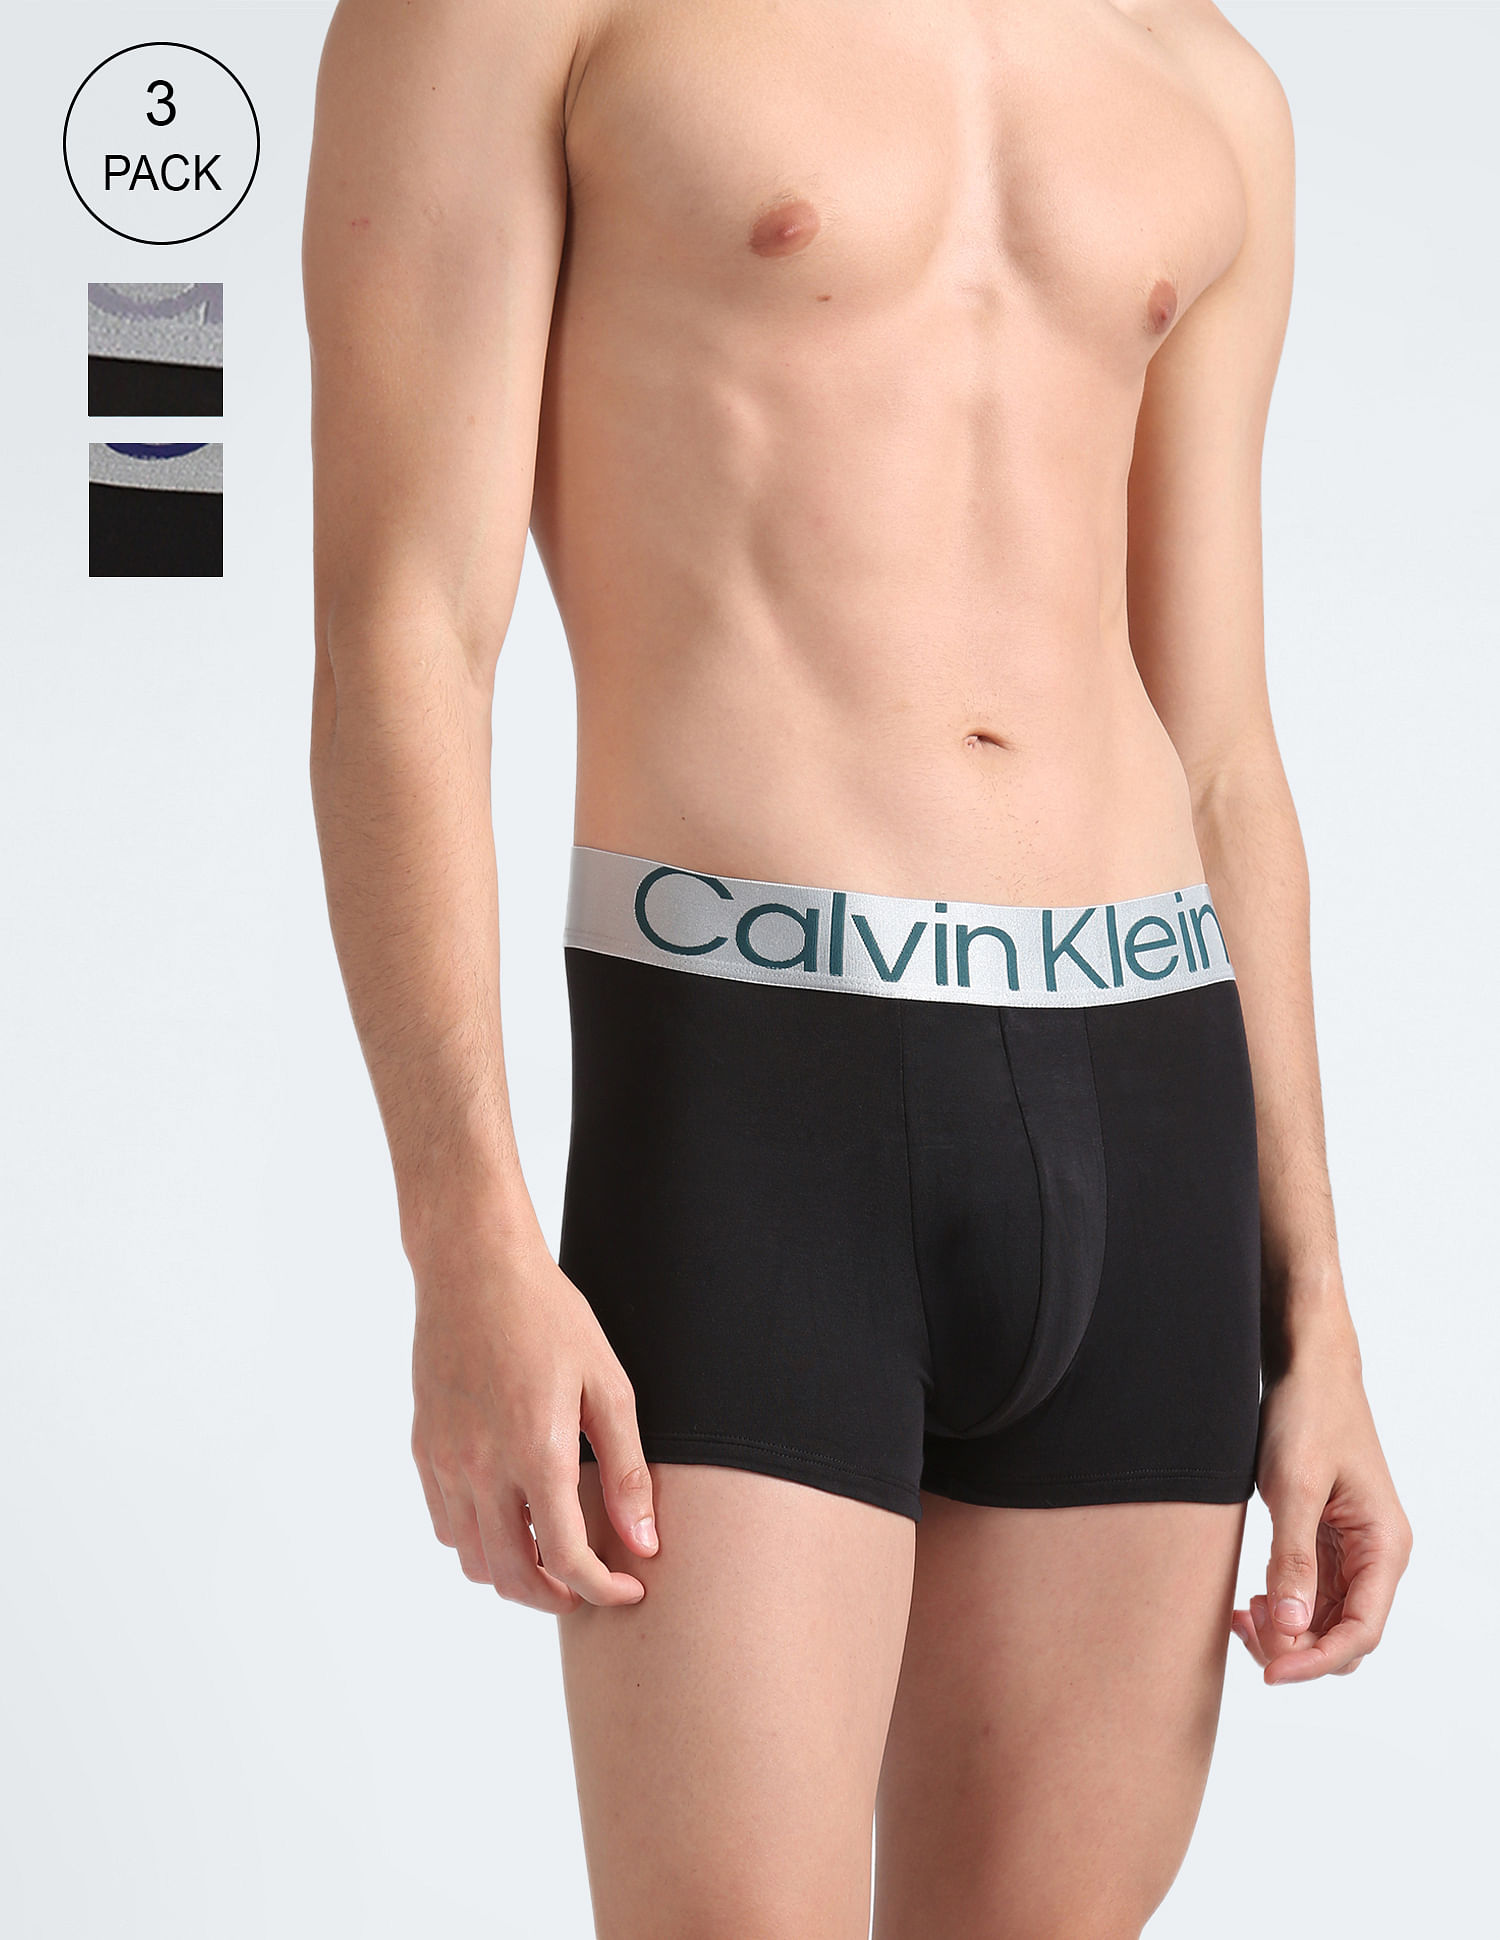 Calvin Klein Men's Underwear Micro Stretch 3 Pack Trunk Large